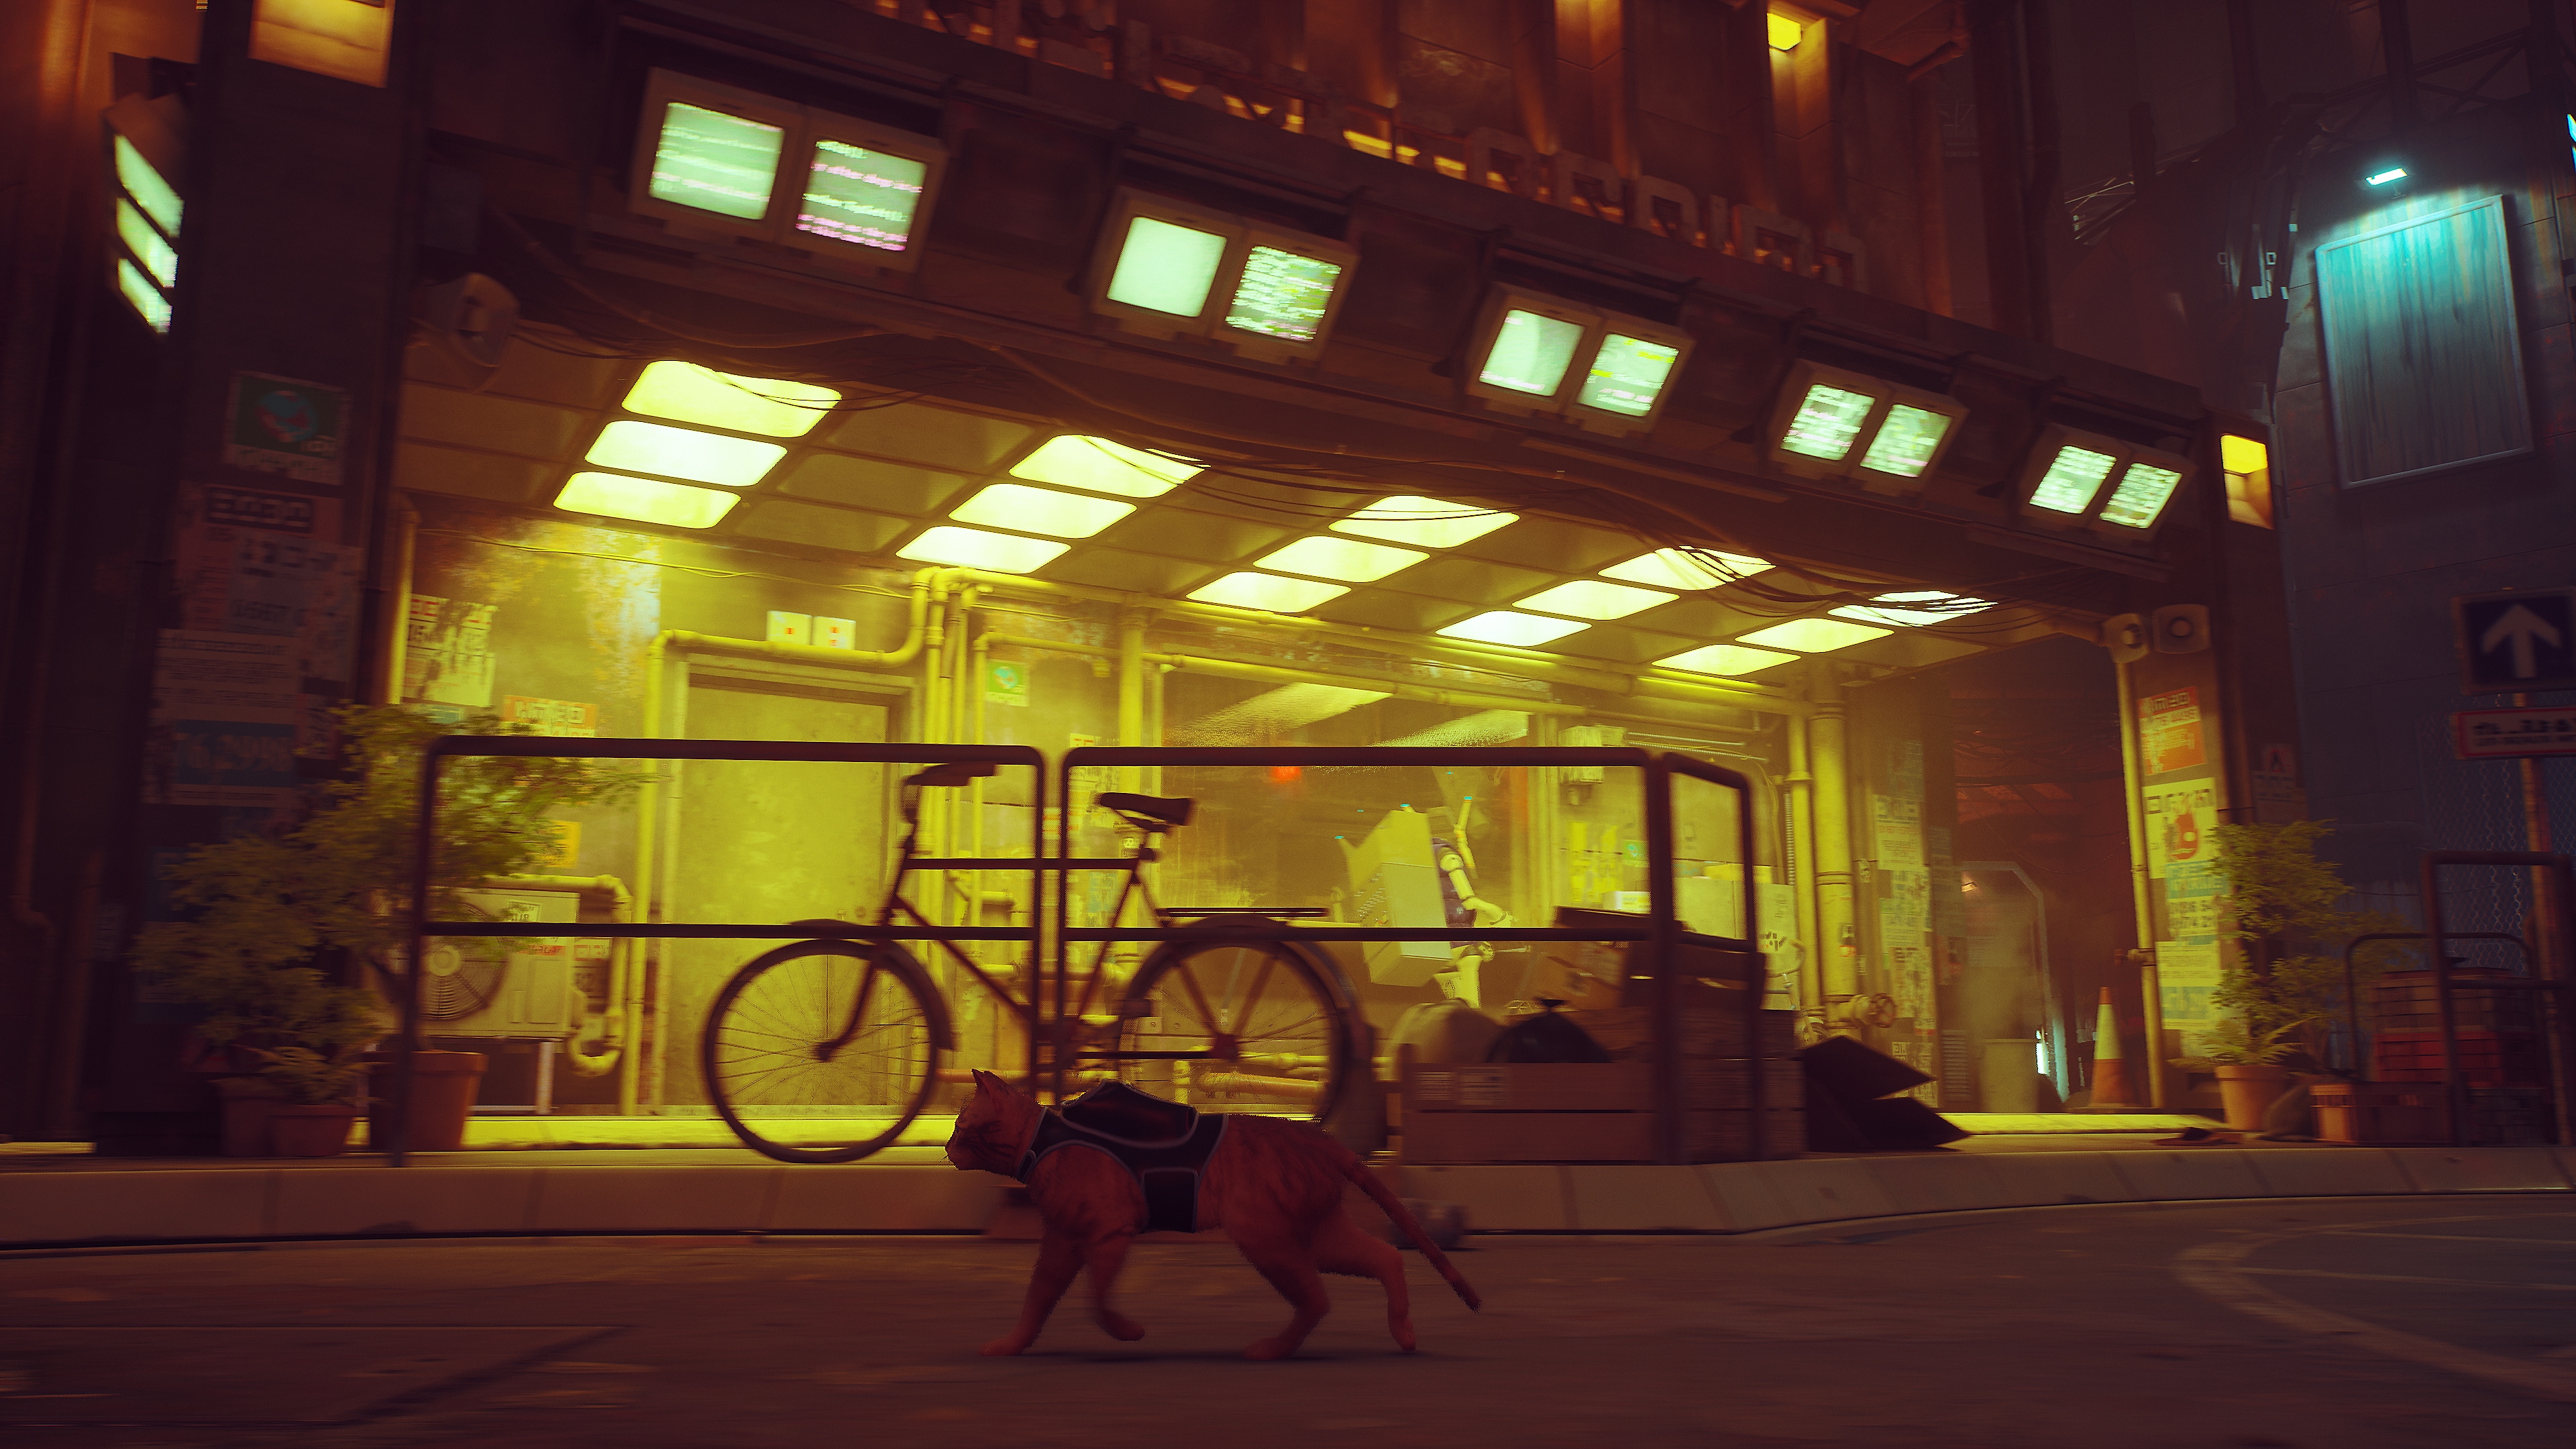 Stray - Istantanea della schermata che mostra un gatto che cammina accanto a una bicicletta